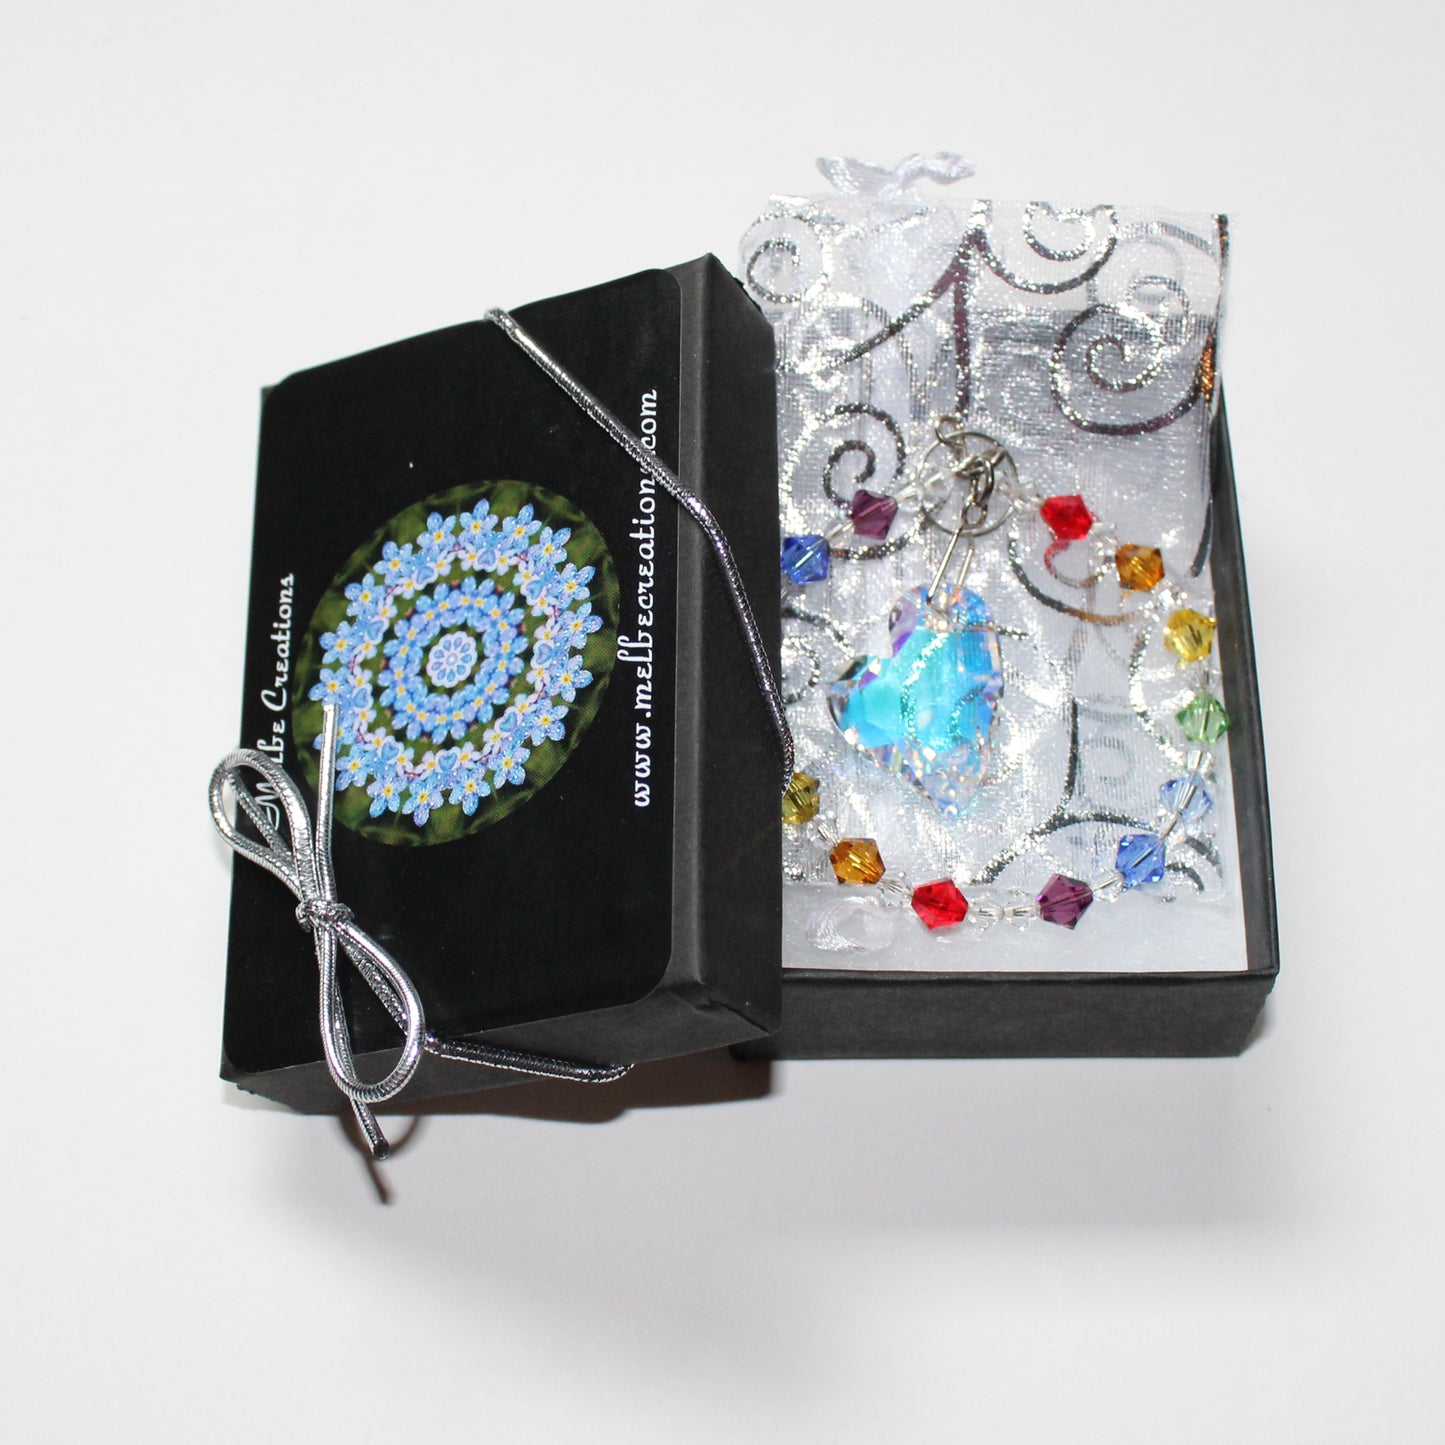 Crystal Heart Pendulum Ornament Suncatcher, Rainbow Maker, Sunlight Catcher, Hanging Crystals, Heart Chakra packaging